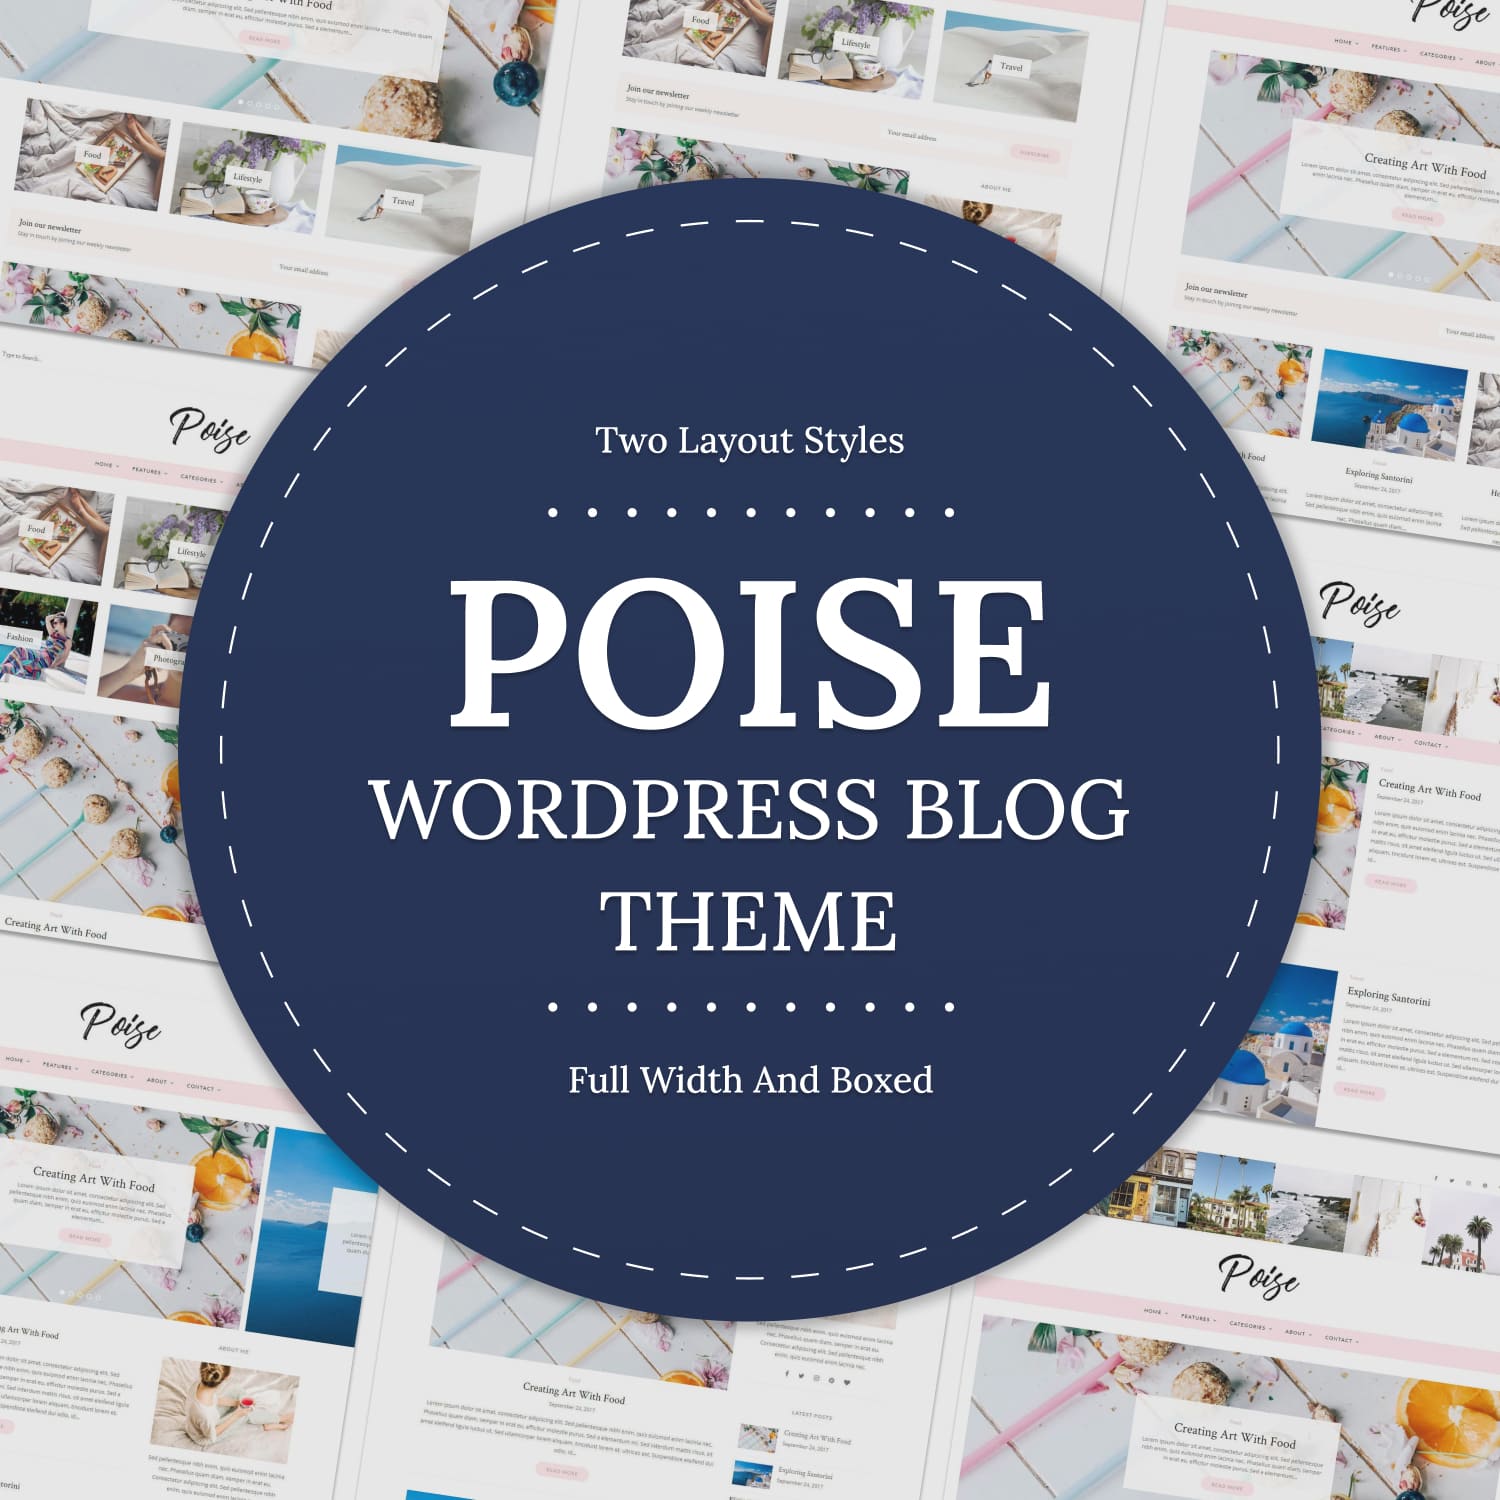 Poise - WordPress Blog Theme.